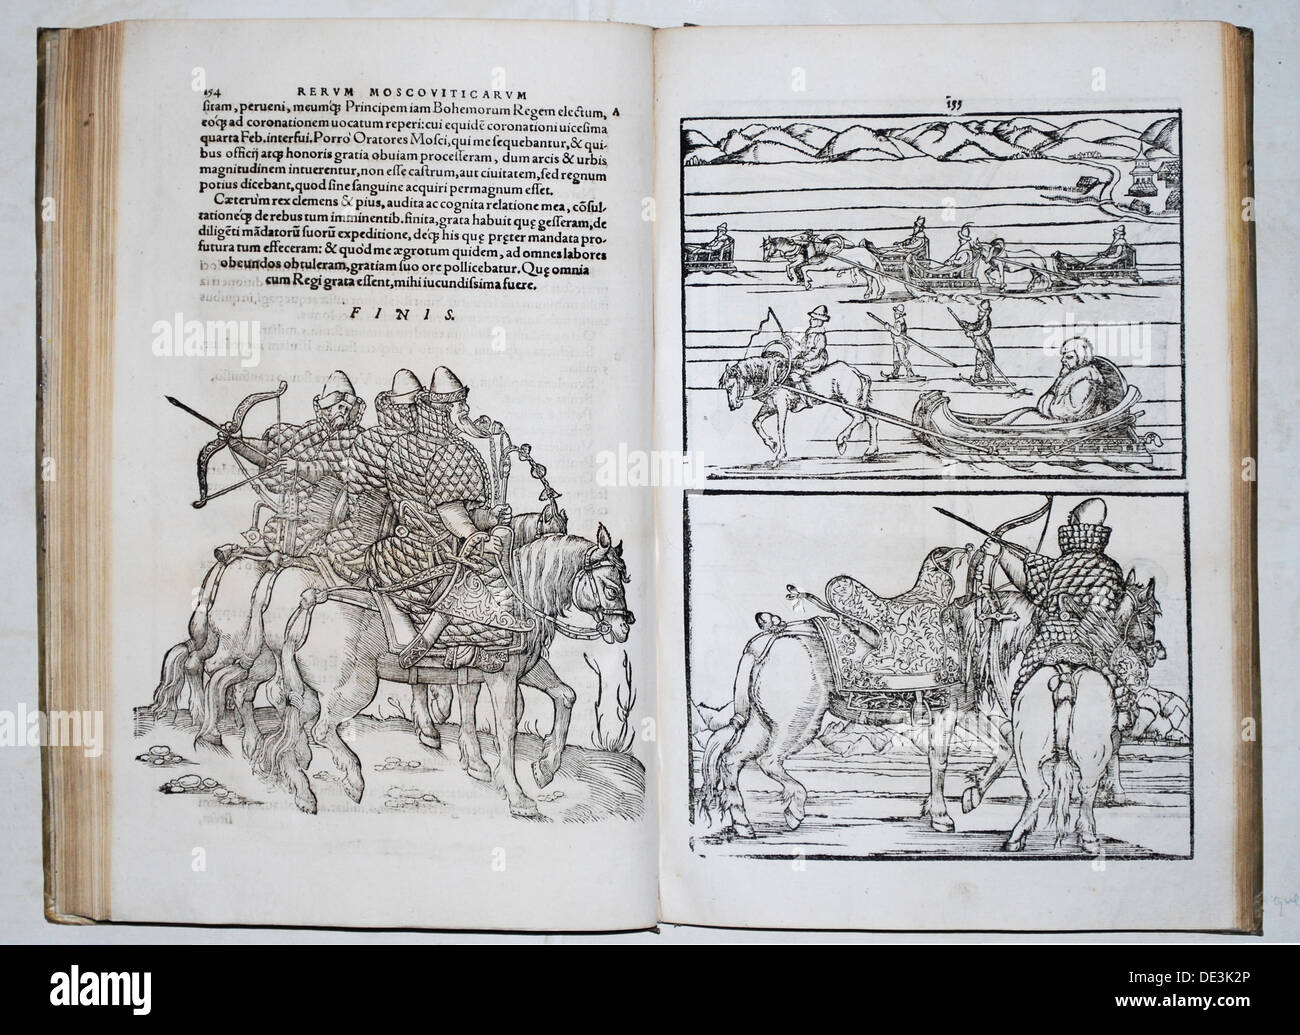 Fédération de guerriers. Siegmund von Herberstein voyages à travers la Russie (De : Rerum Moscoviticarum commentarii..), 1571. Artiste : Anonyme Banque D'Images